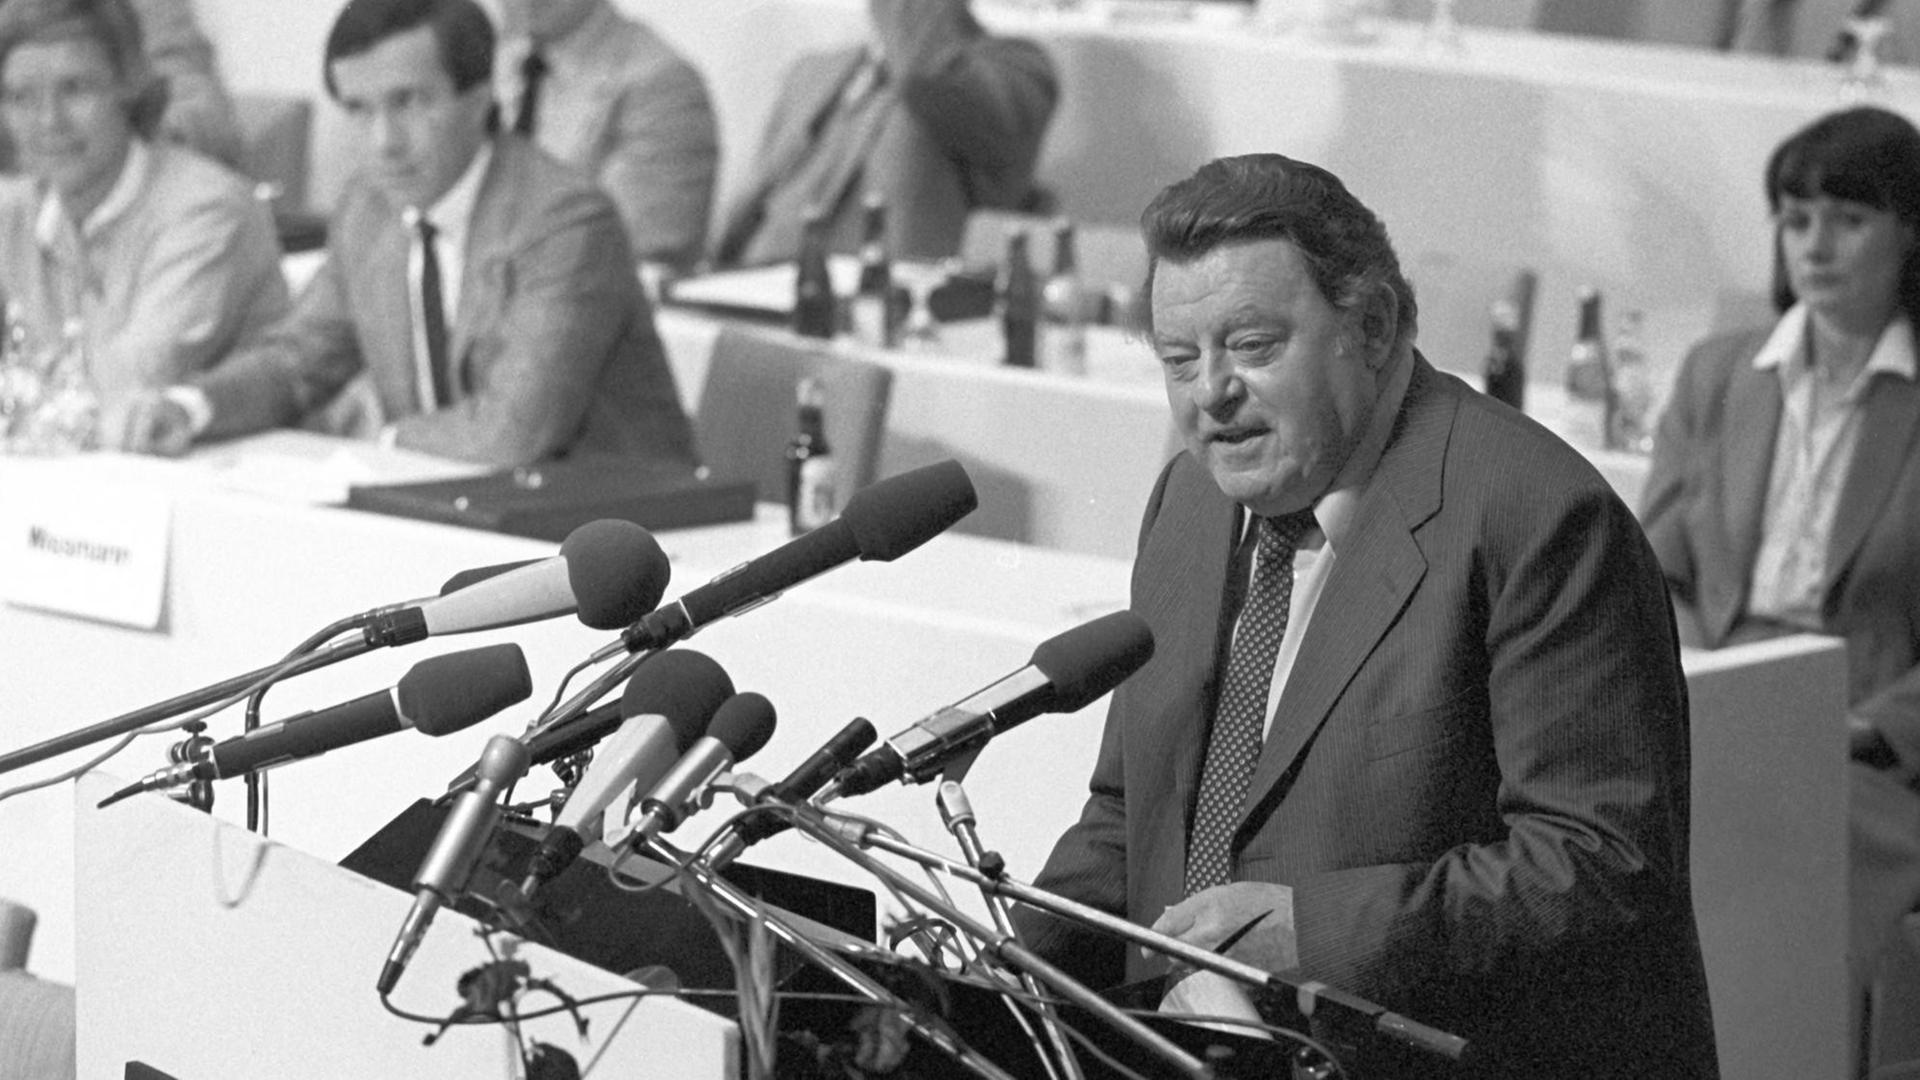 CSU-Chef und Kanzlerkandidat Franz Josef Strauß bei seiner Rede vor den Delegierten. Die CDU/CSU hat am 30.08.1980 in Mannheim die heiße Phase des Bundestagswahlkampfes eingeleitet.